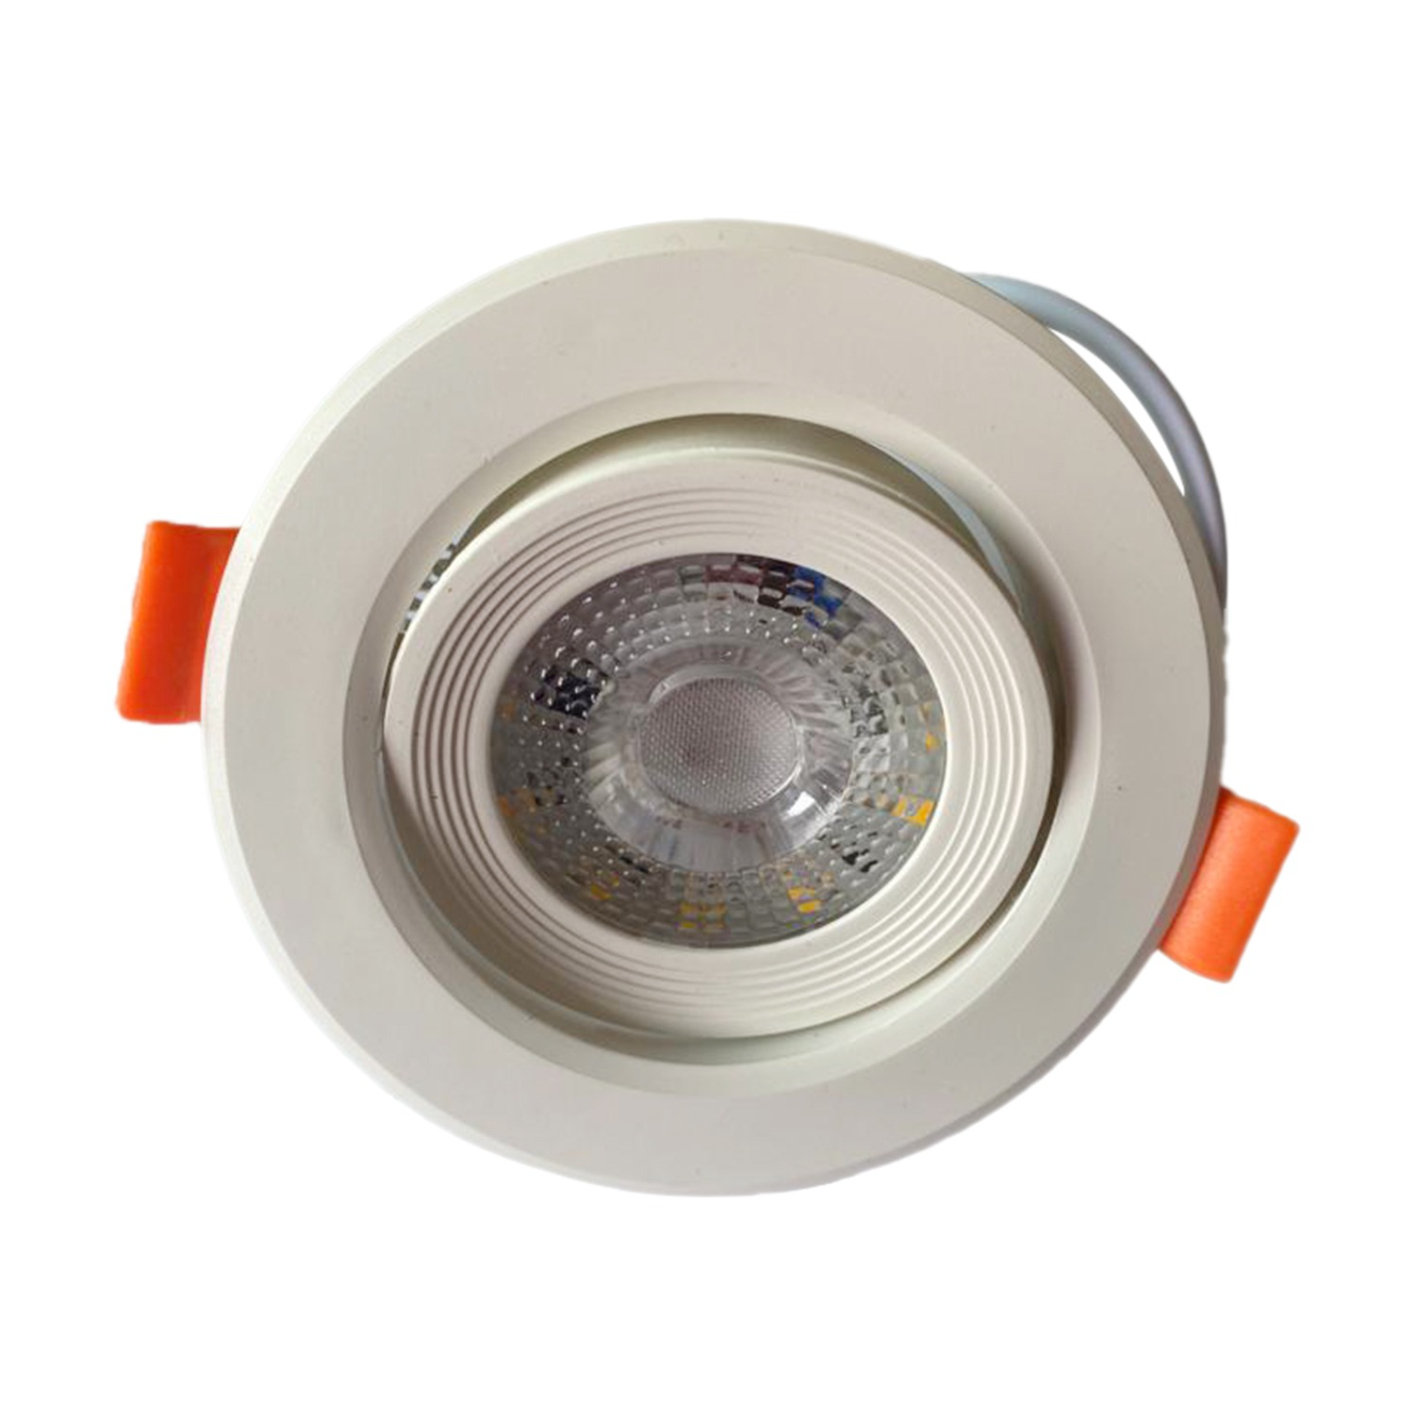 Raspo LED Downlight 12W Lamp white AC 170-265V Spotlight Light Indoor Down Light